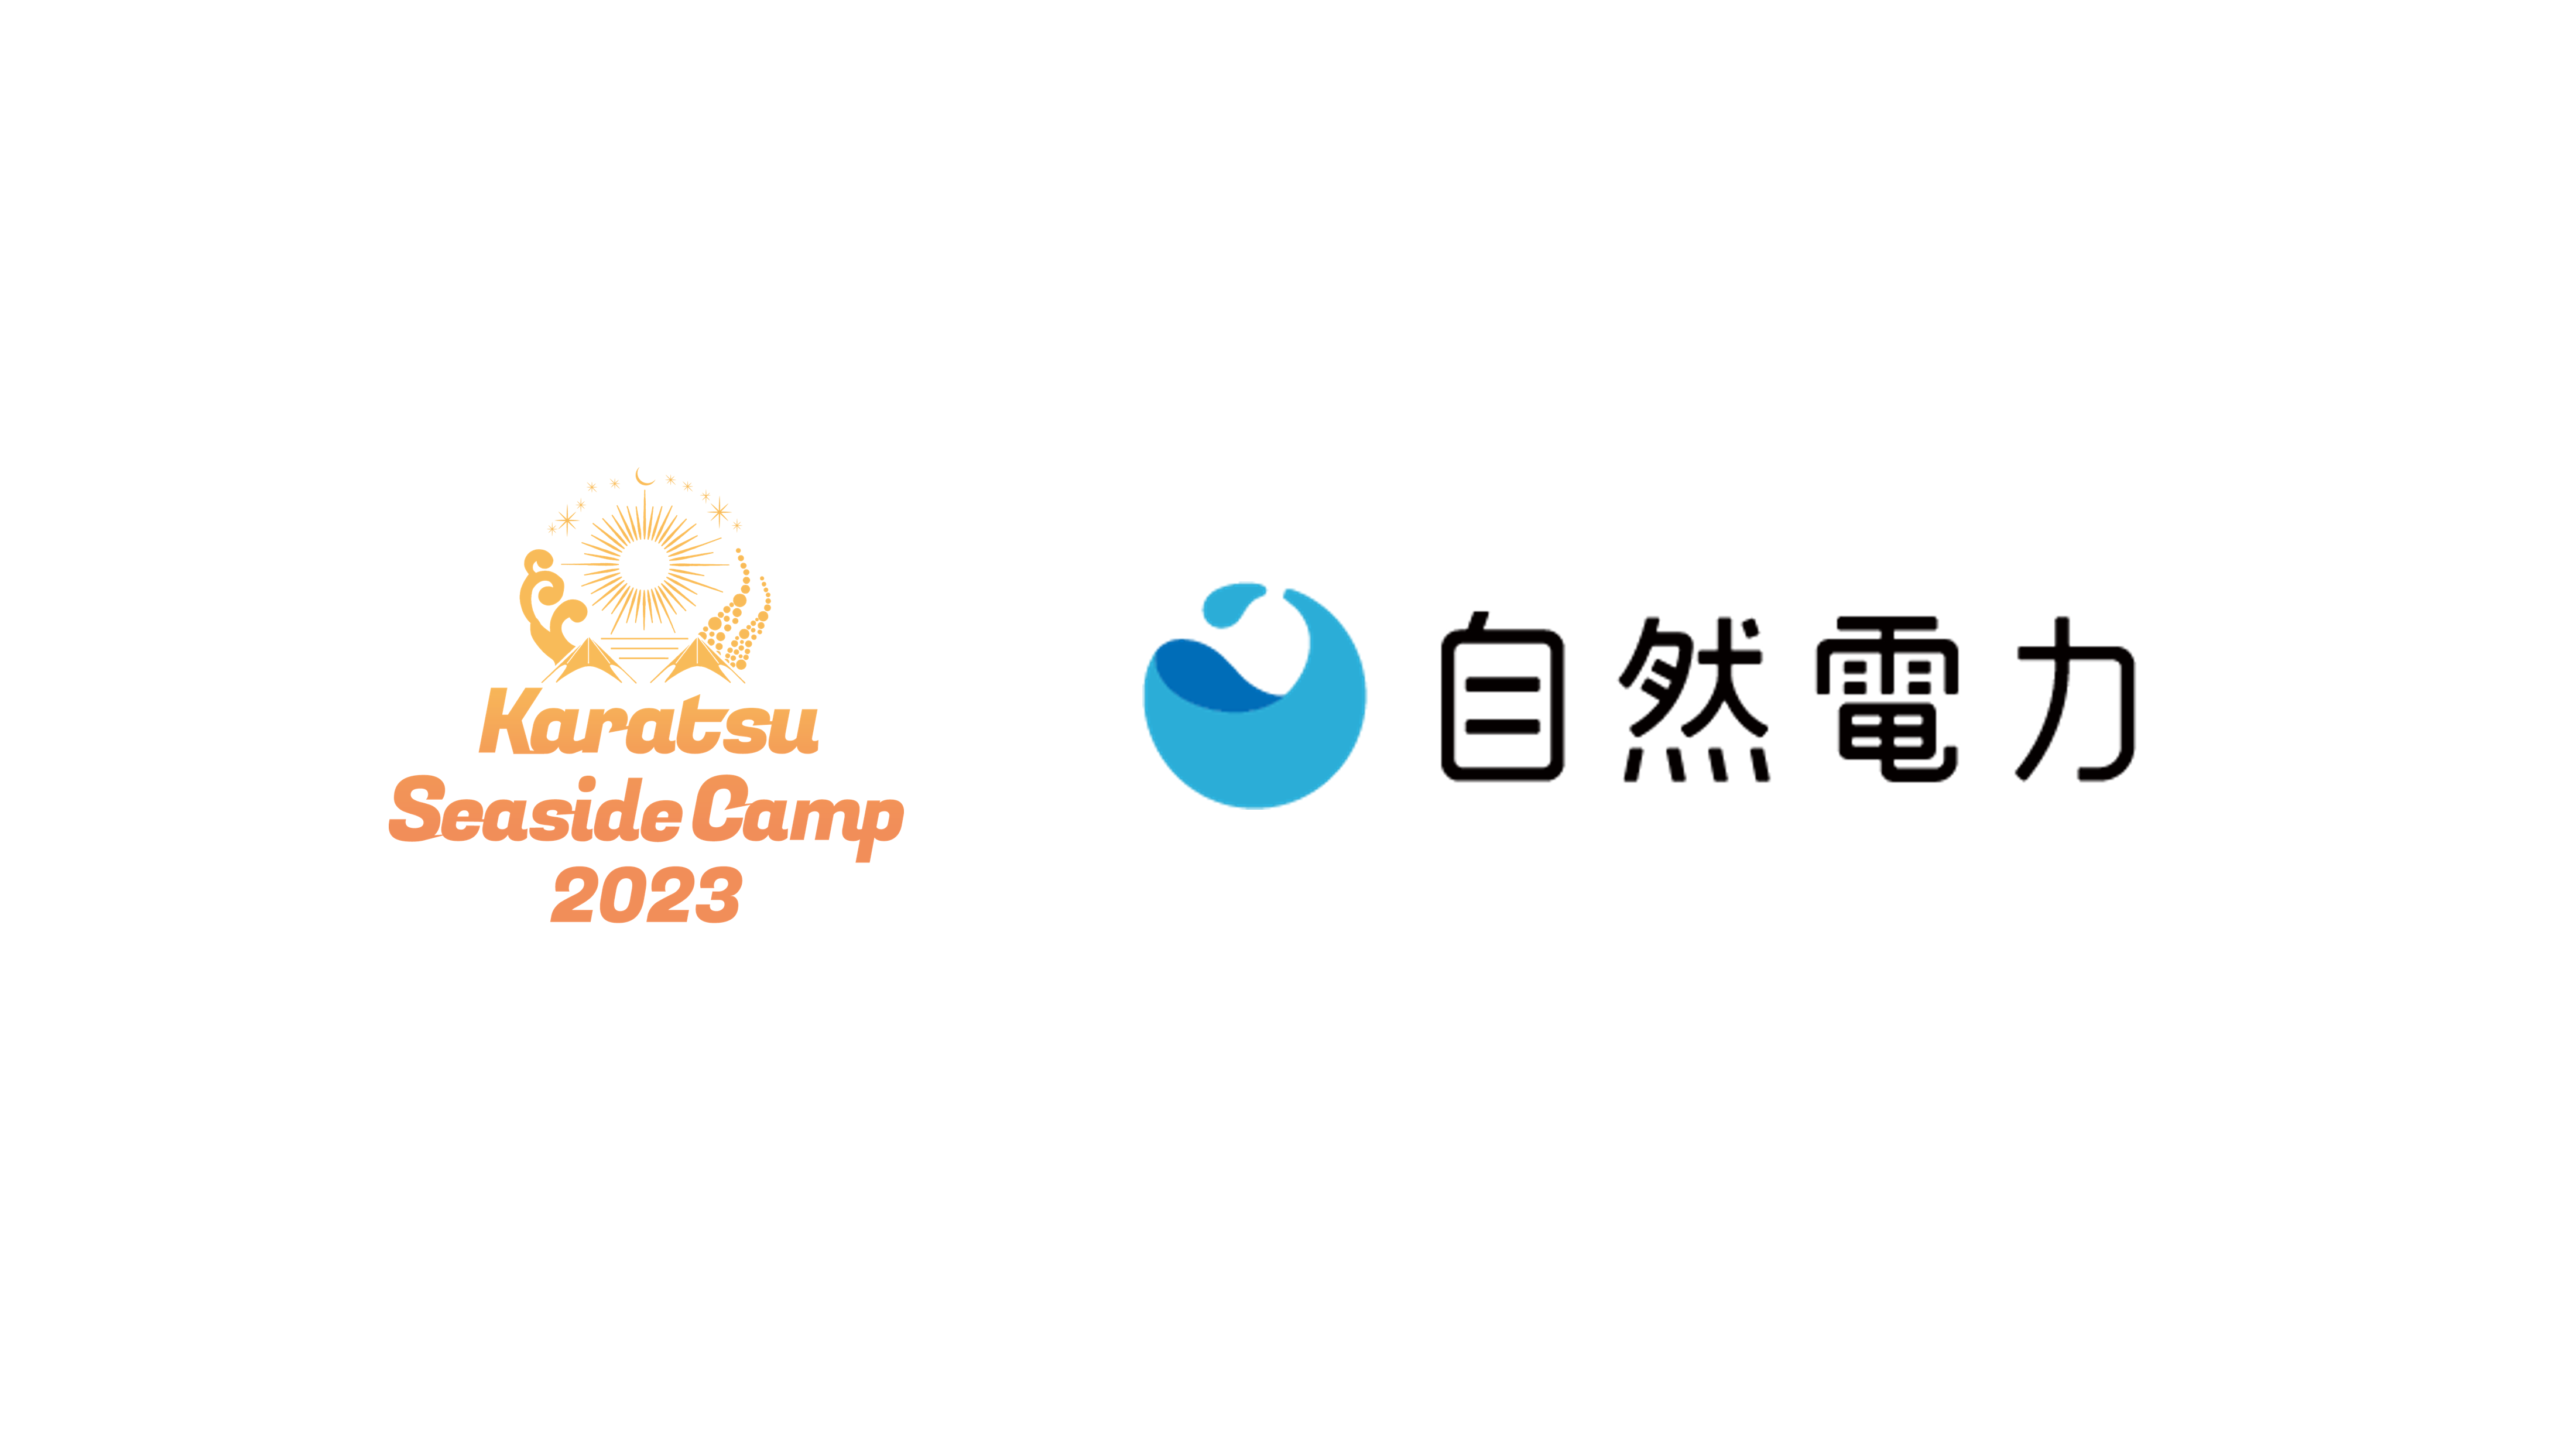 唐津シーサイドキャンプ2023の カーボンオフセット開催をサポート